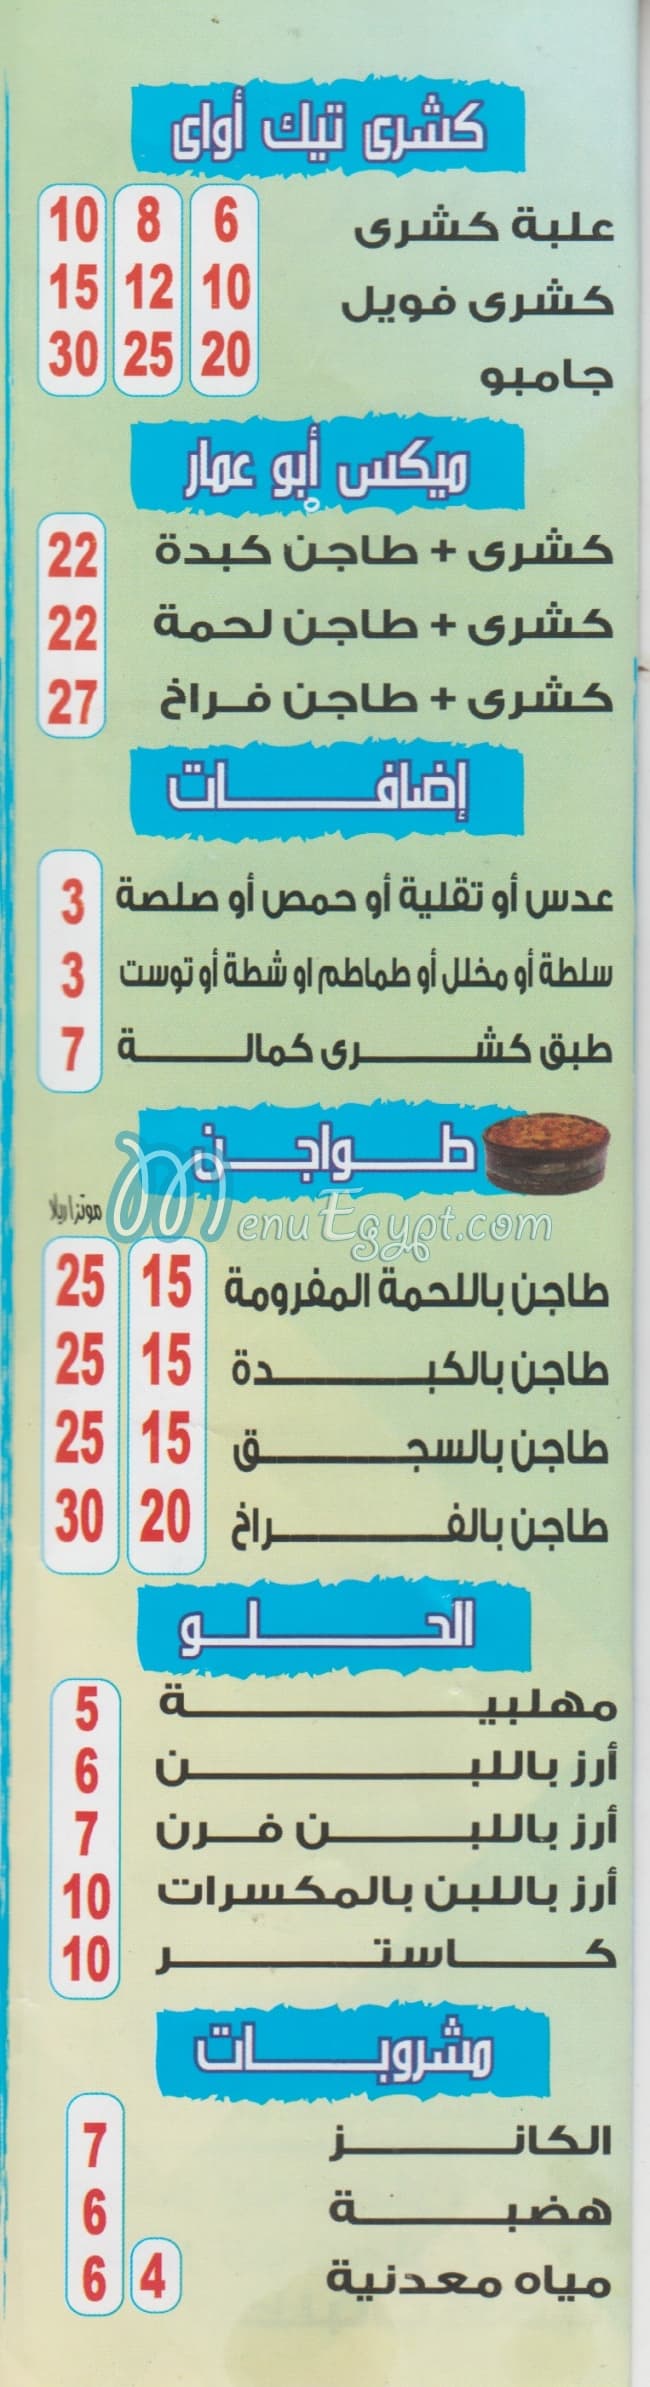 Abo Ammar menu Egypt 1